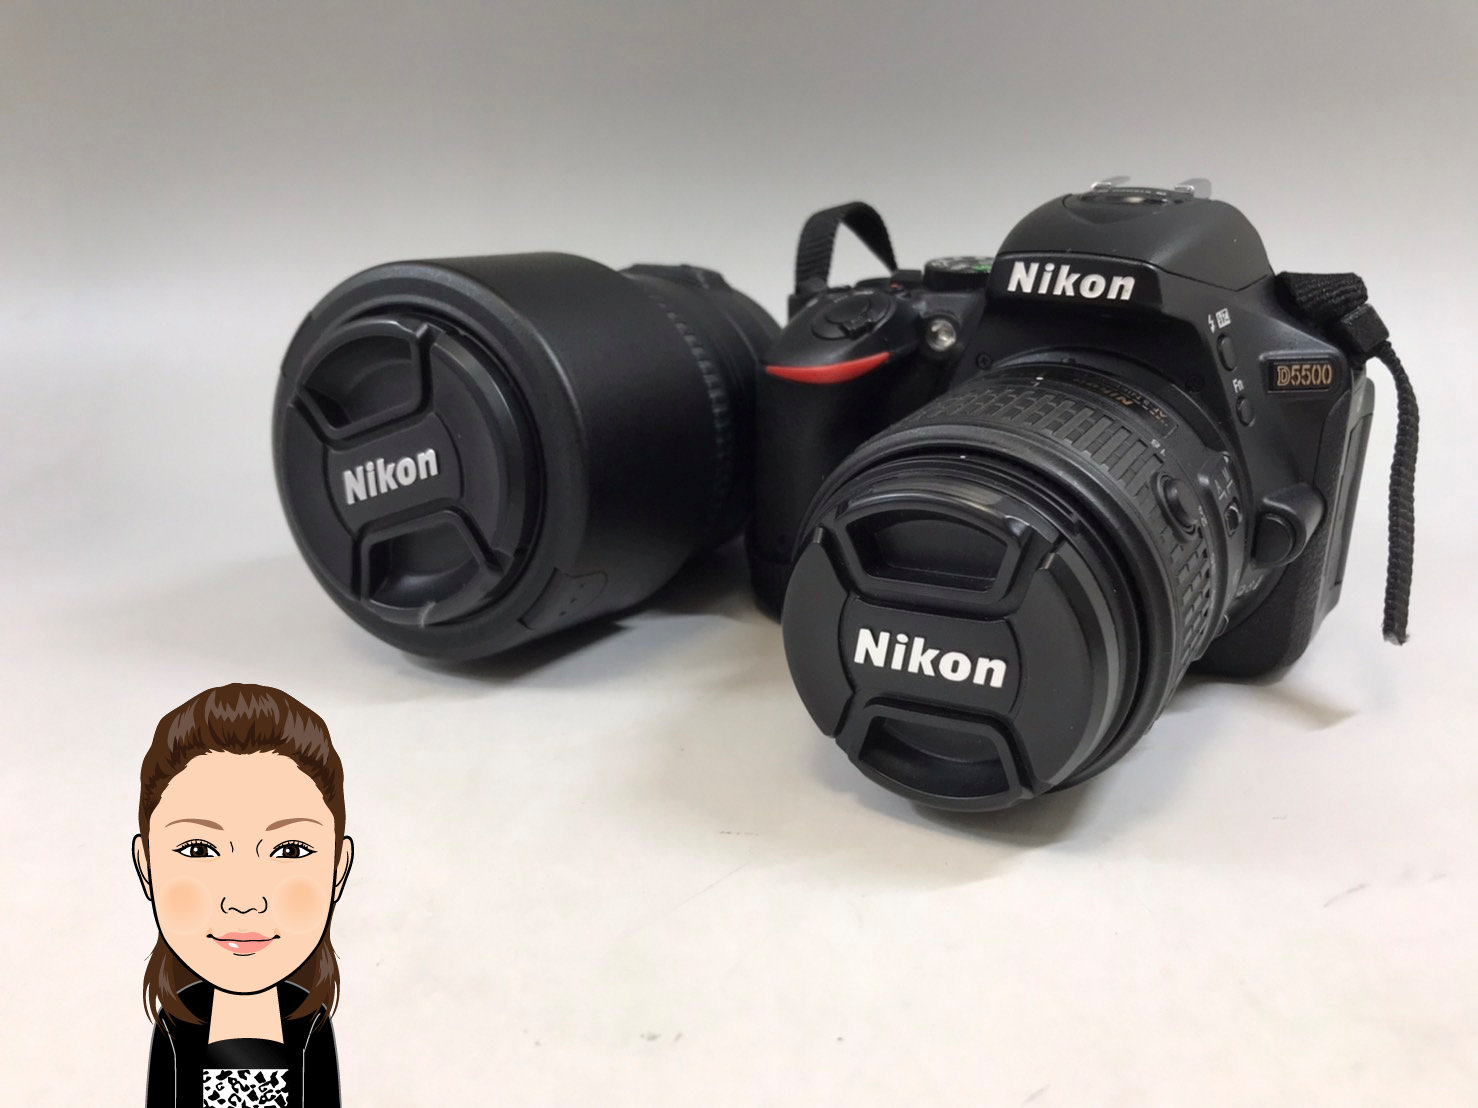 Nikon 【ニコン】 ダブルズームキット D5500 デジタル一眼レフカメラ 画像1